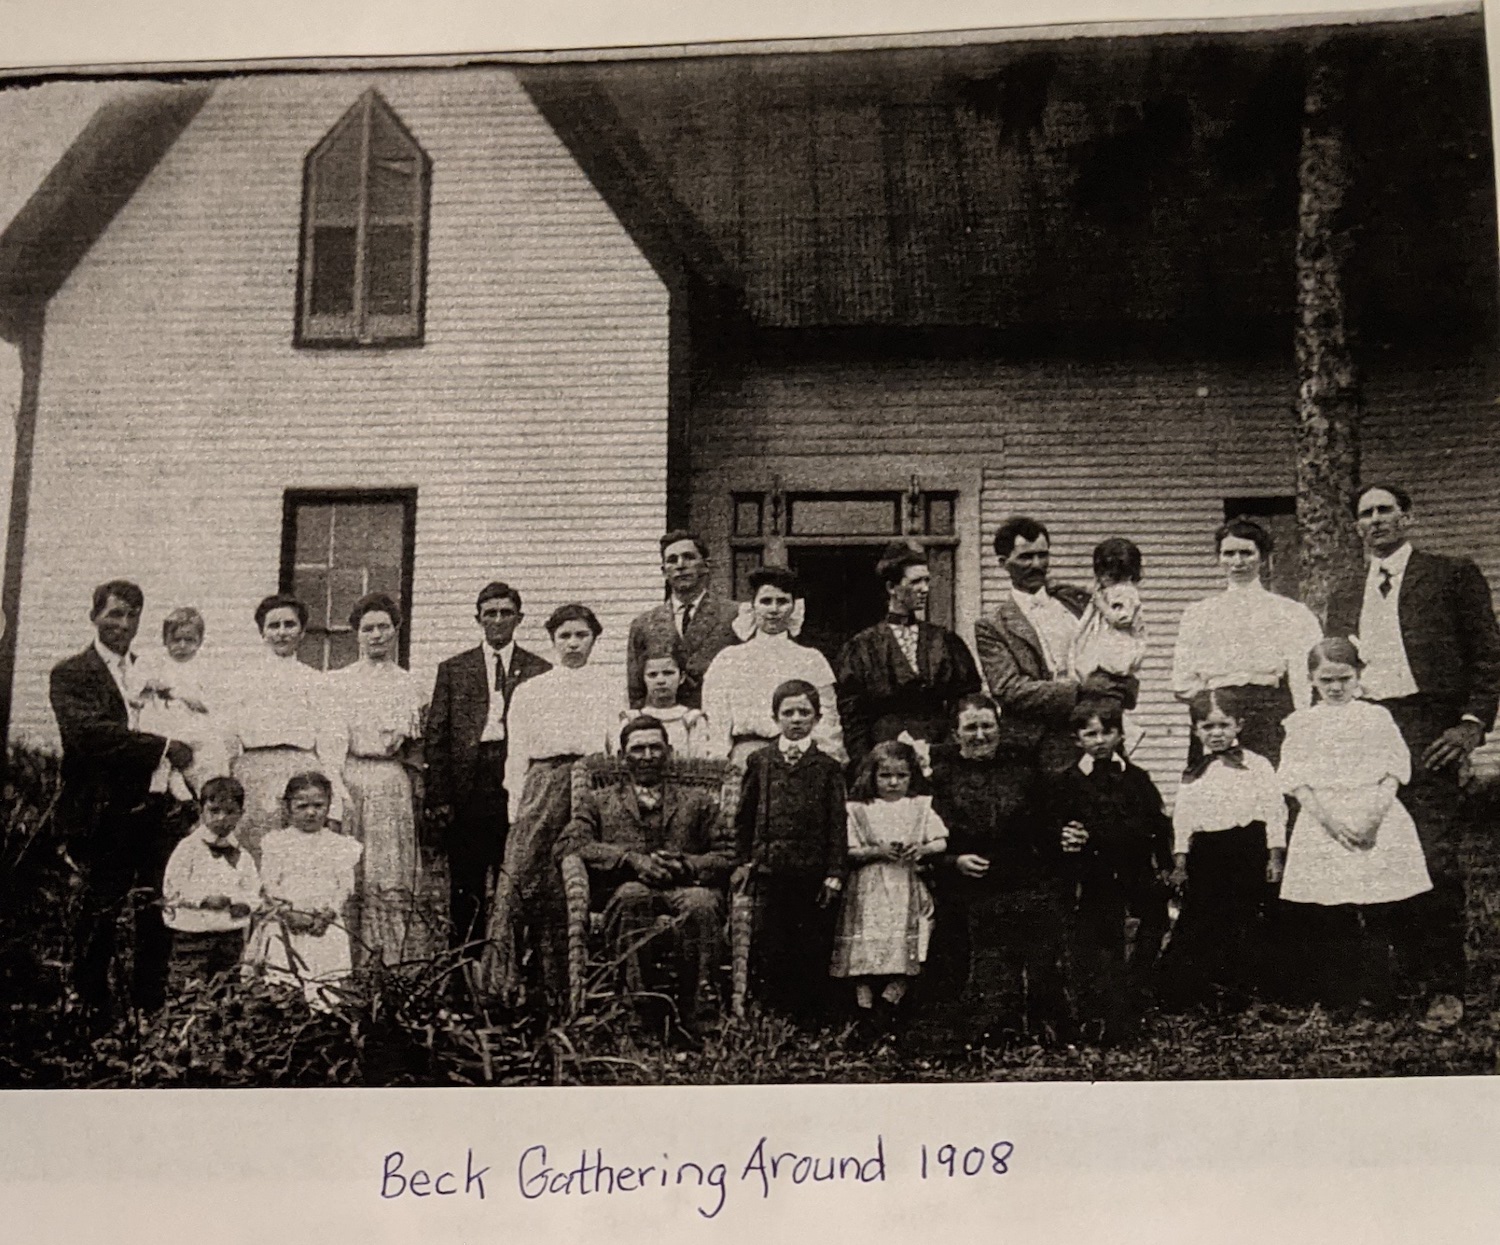 Ảnh chụp chung của đại gia đình nhà Beck trong dịp gặp gỡ vào khoảng năm 1908. (Ảnh do ông Victor Cole cung cấp)